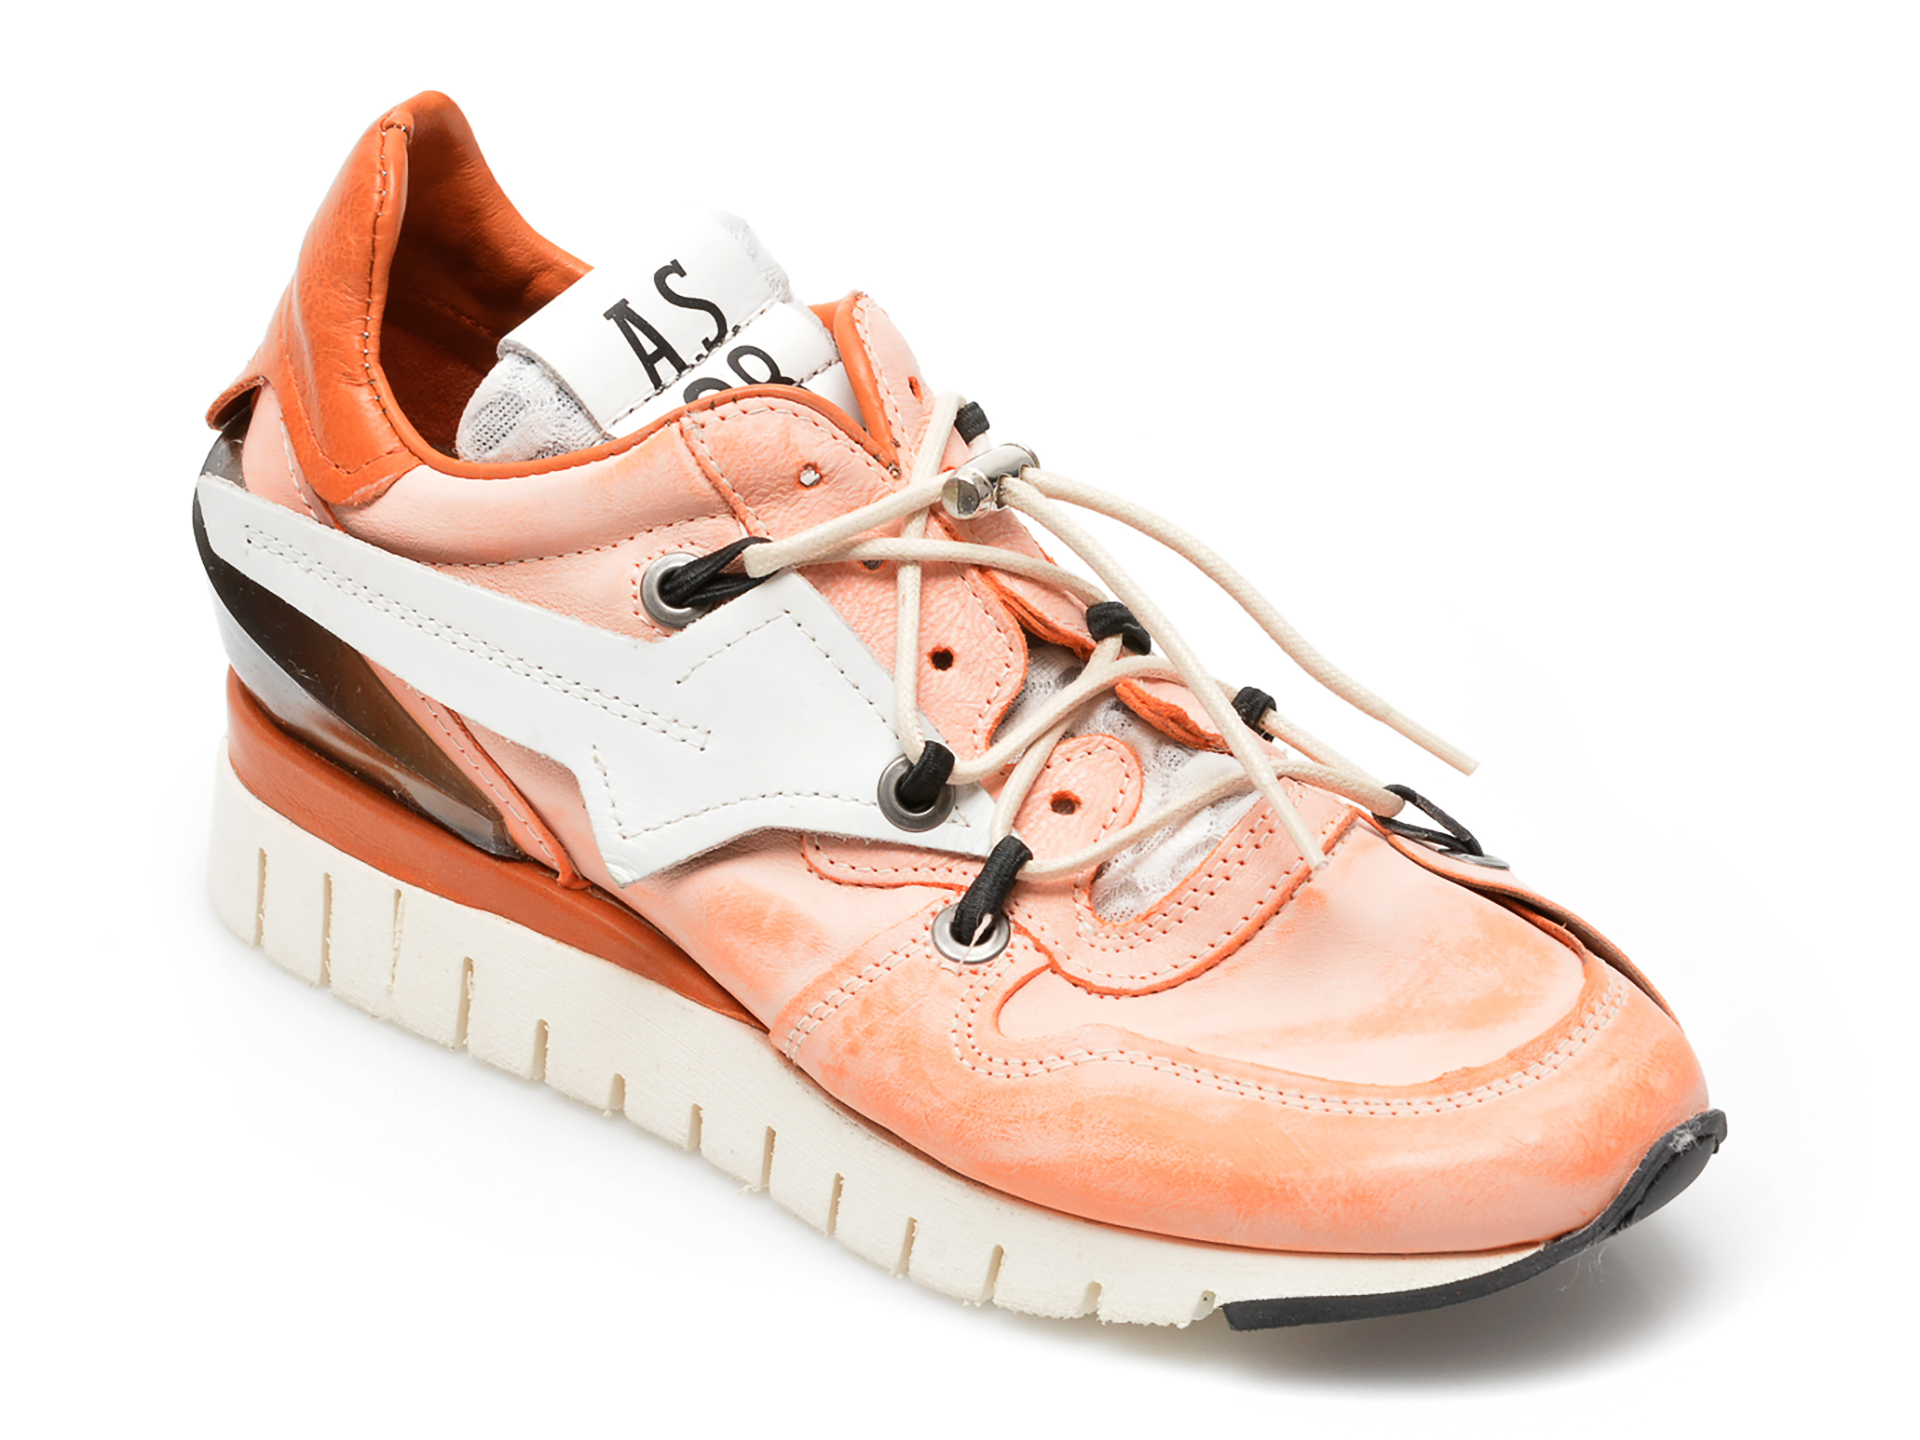 Pantofi sport A.S. 98 portocalii, A13101, din piele naturala 2022 ❤️ Pret Super tezyo.ro imagine noua 2022